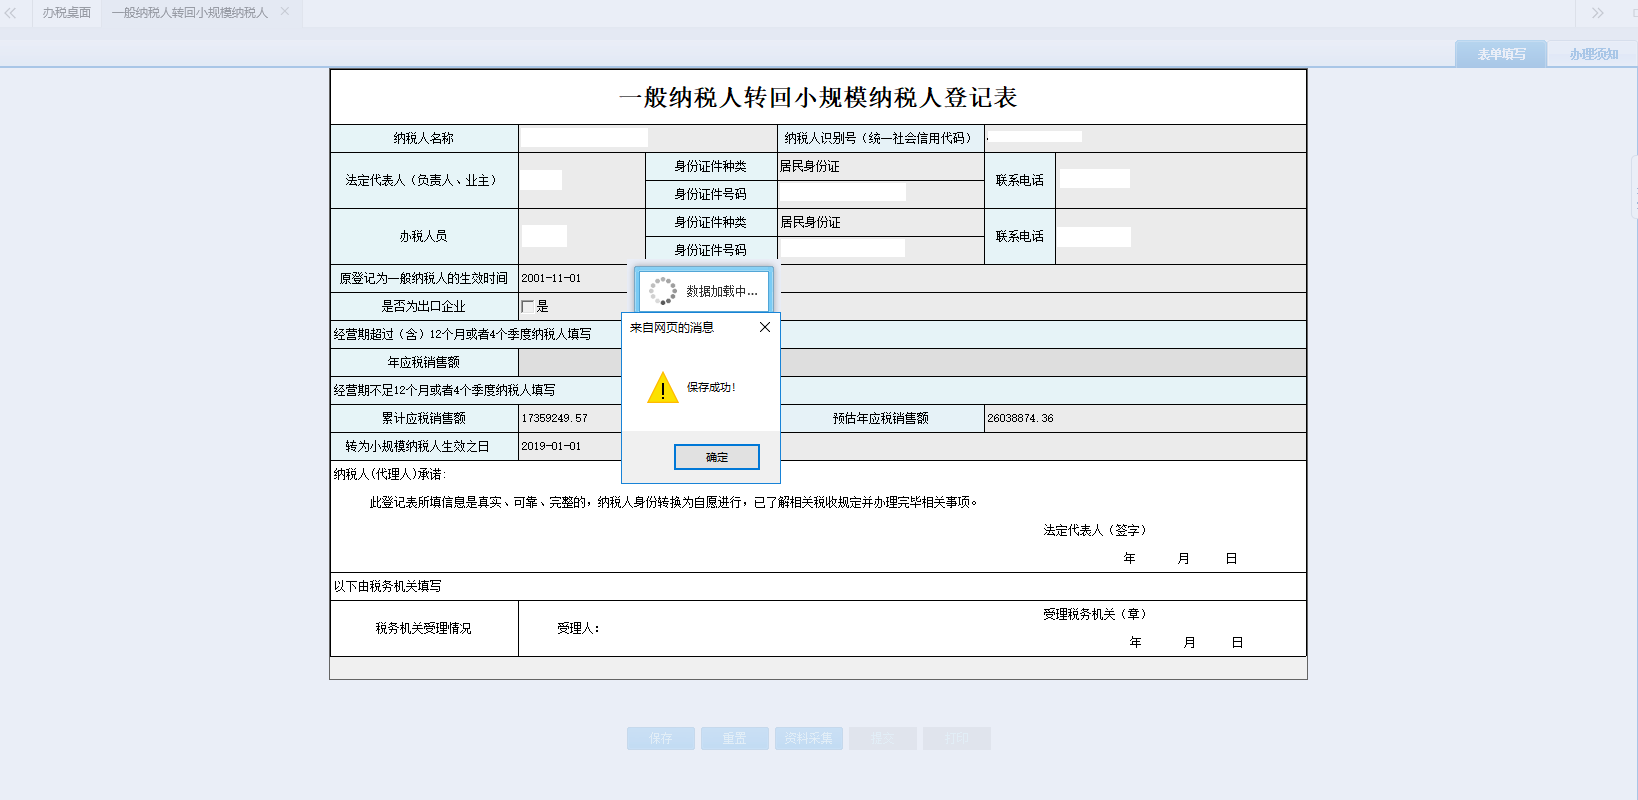 河南省电子税务局一般纳税人转回小规模纳税人登记表提交